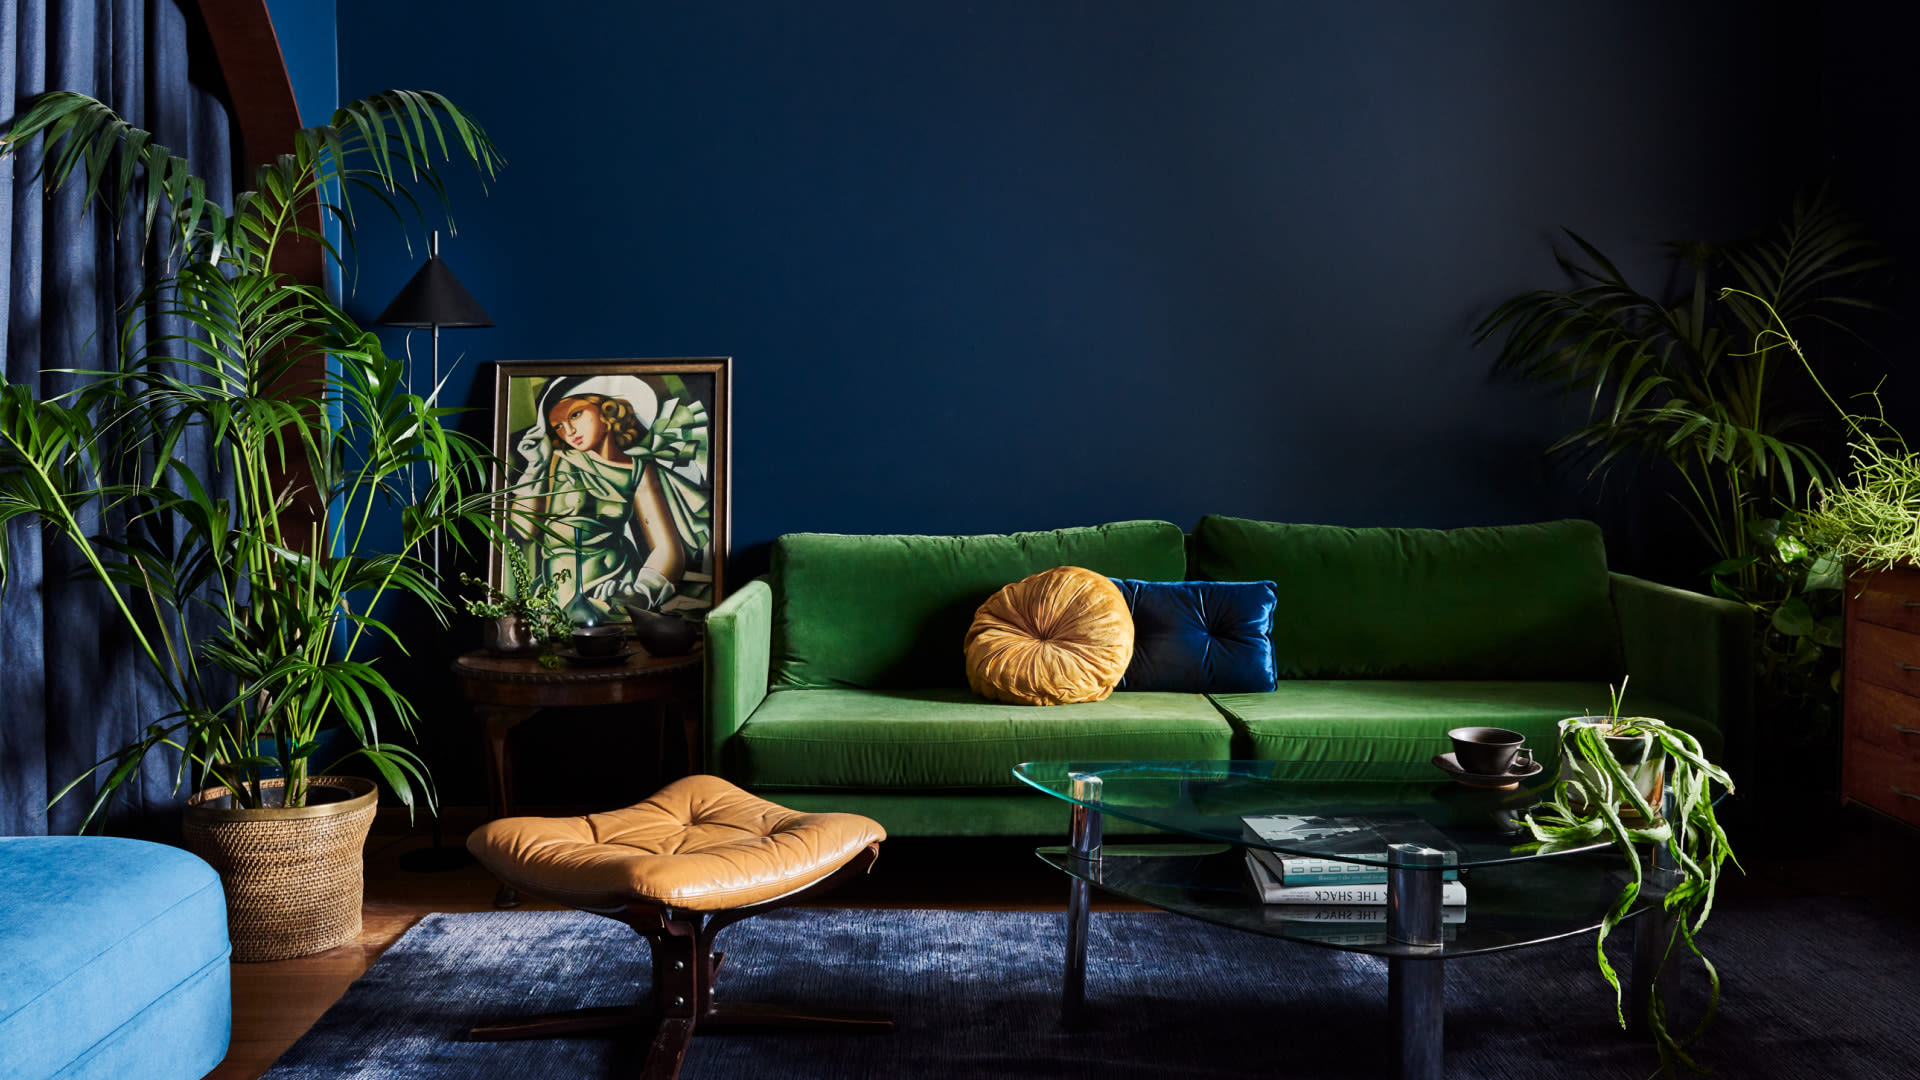 Hickford Street_deep blue walls_velvet sofa